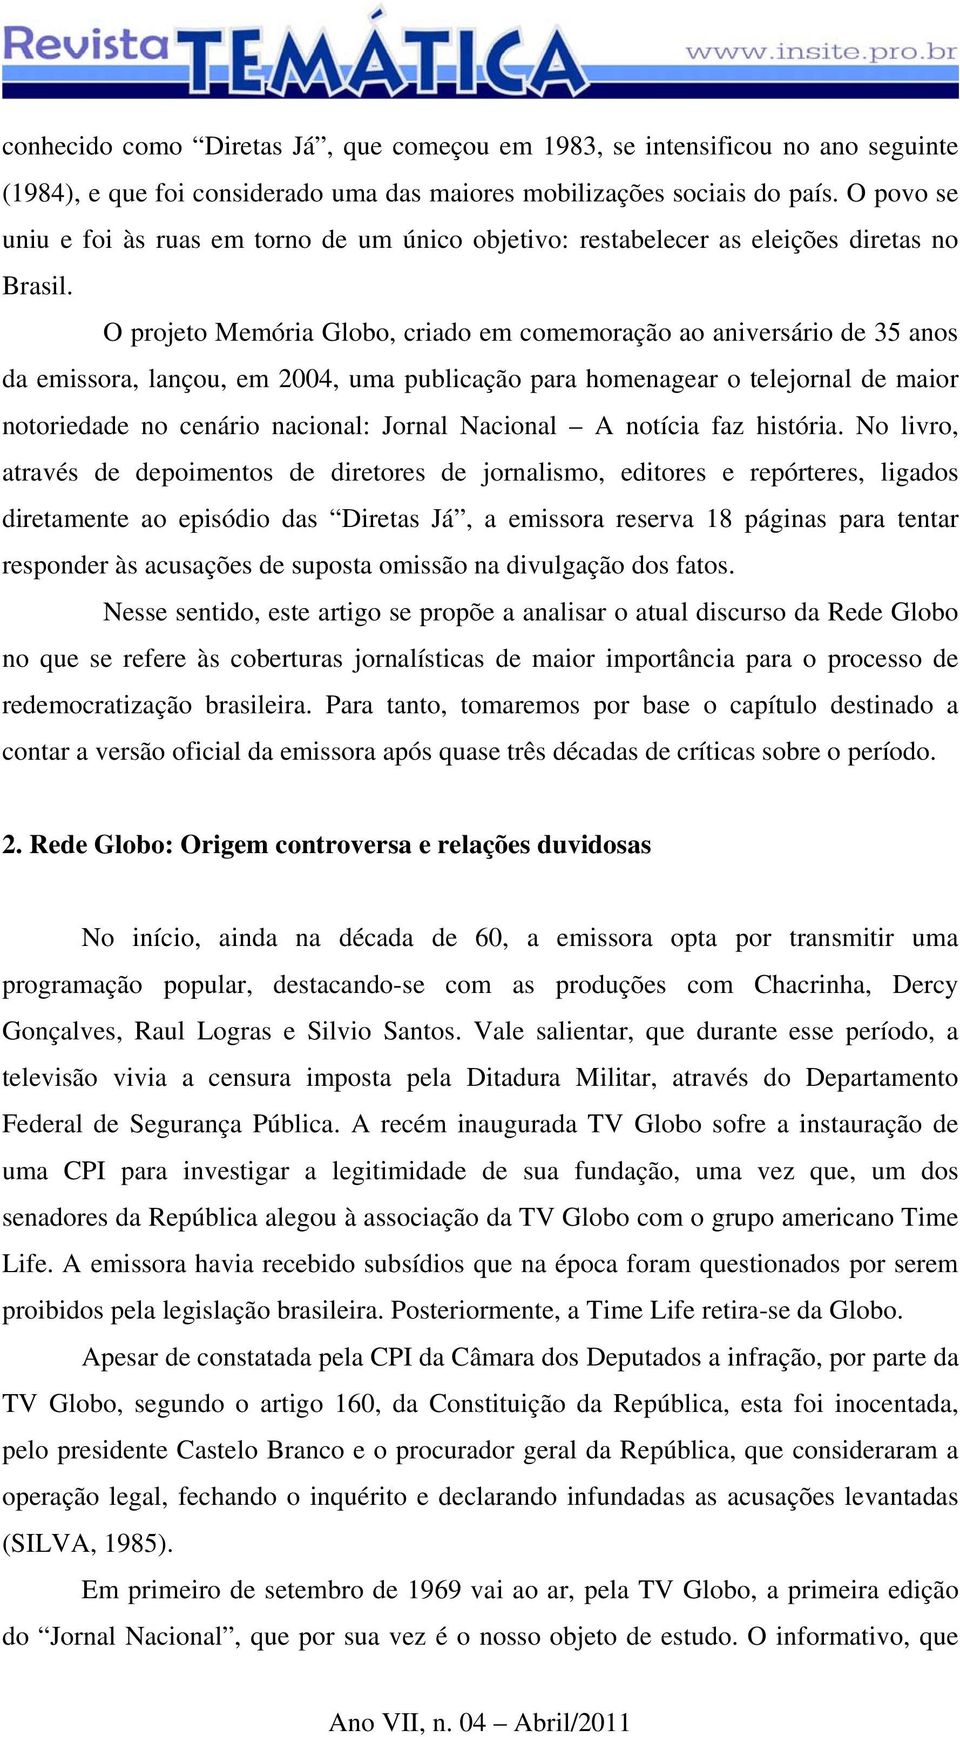 O projeto Memória Globo, criado em comemoração ao aniversário de 35 anos da emissora, lançou, em 2004, uma publicação para homenagear o telejornal de maior notoriedade no cenário nacional: Jornal